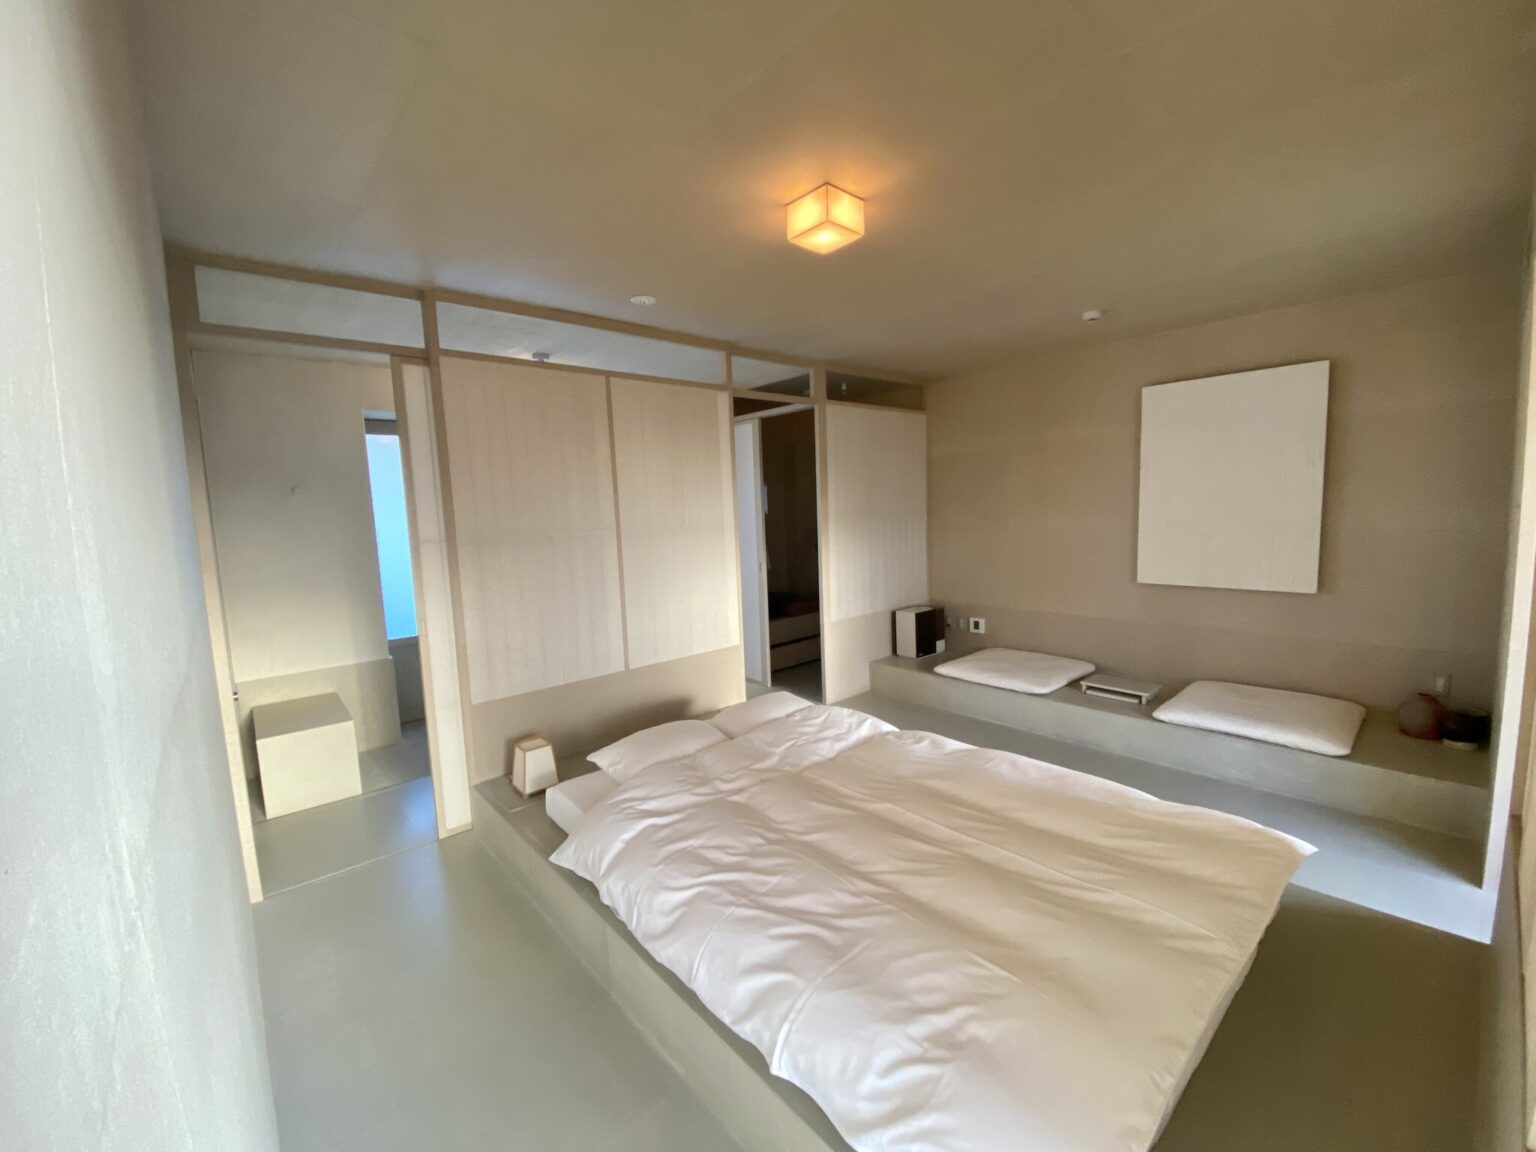 1ベッドルームは、部屋の中央にダブルサイズの布団が据えられている。